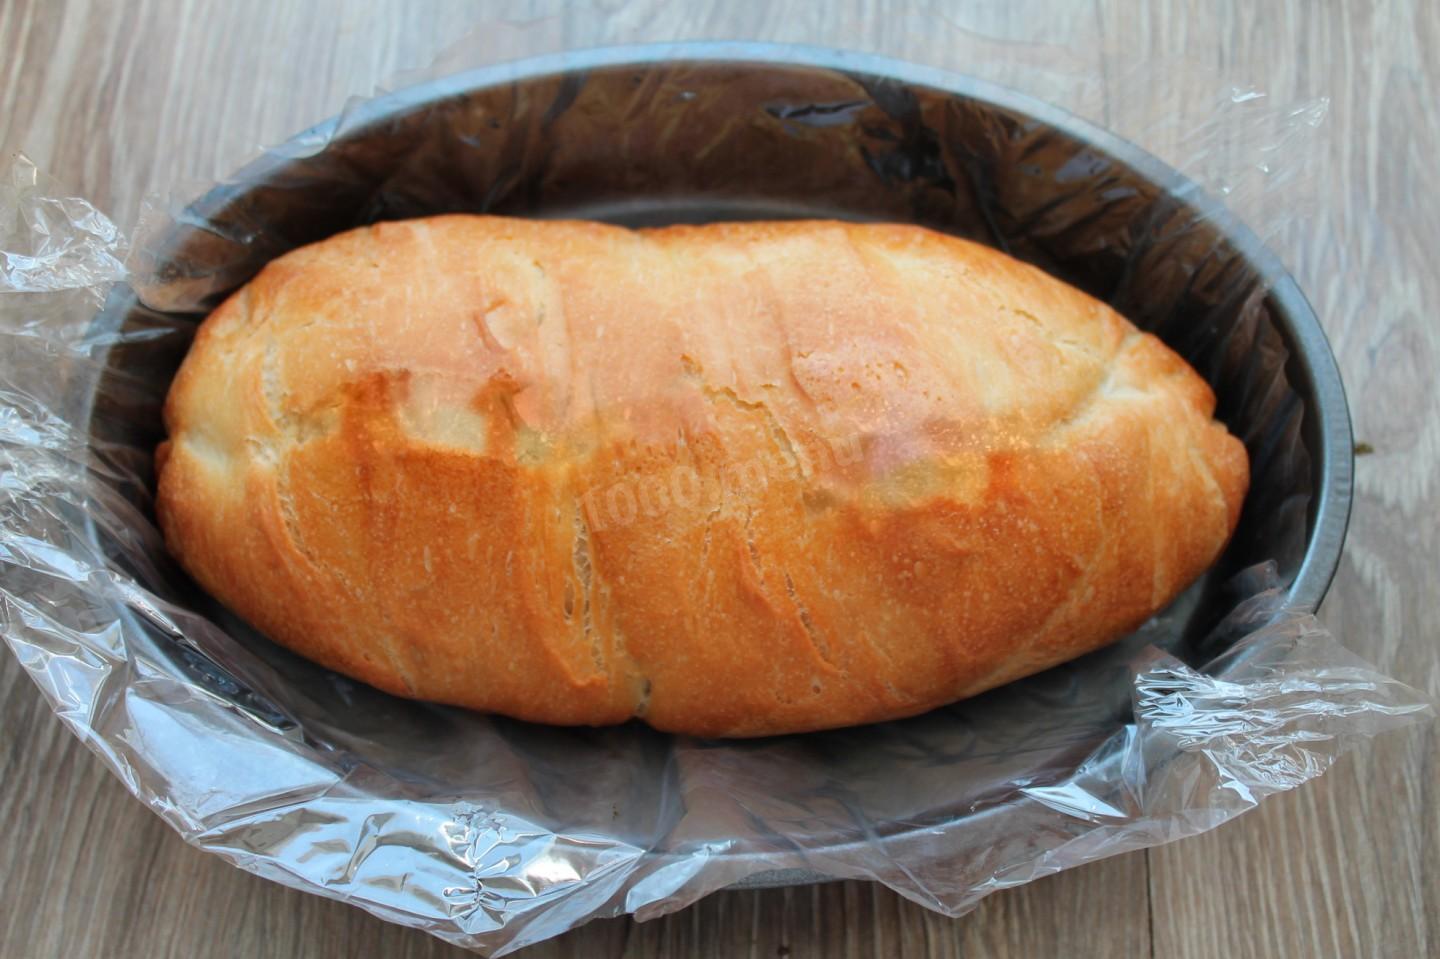 Хлеб в духовке в рукаве для запекания. Форма для запекания батона. Хлеб в рукаве для запекания. Хлеб в пакете для запекания в духовке. Домашний хлеб в рукаве для запекания в духовке.